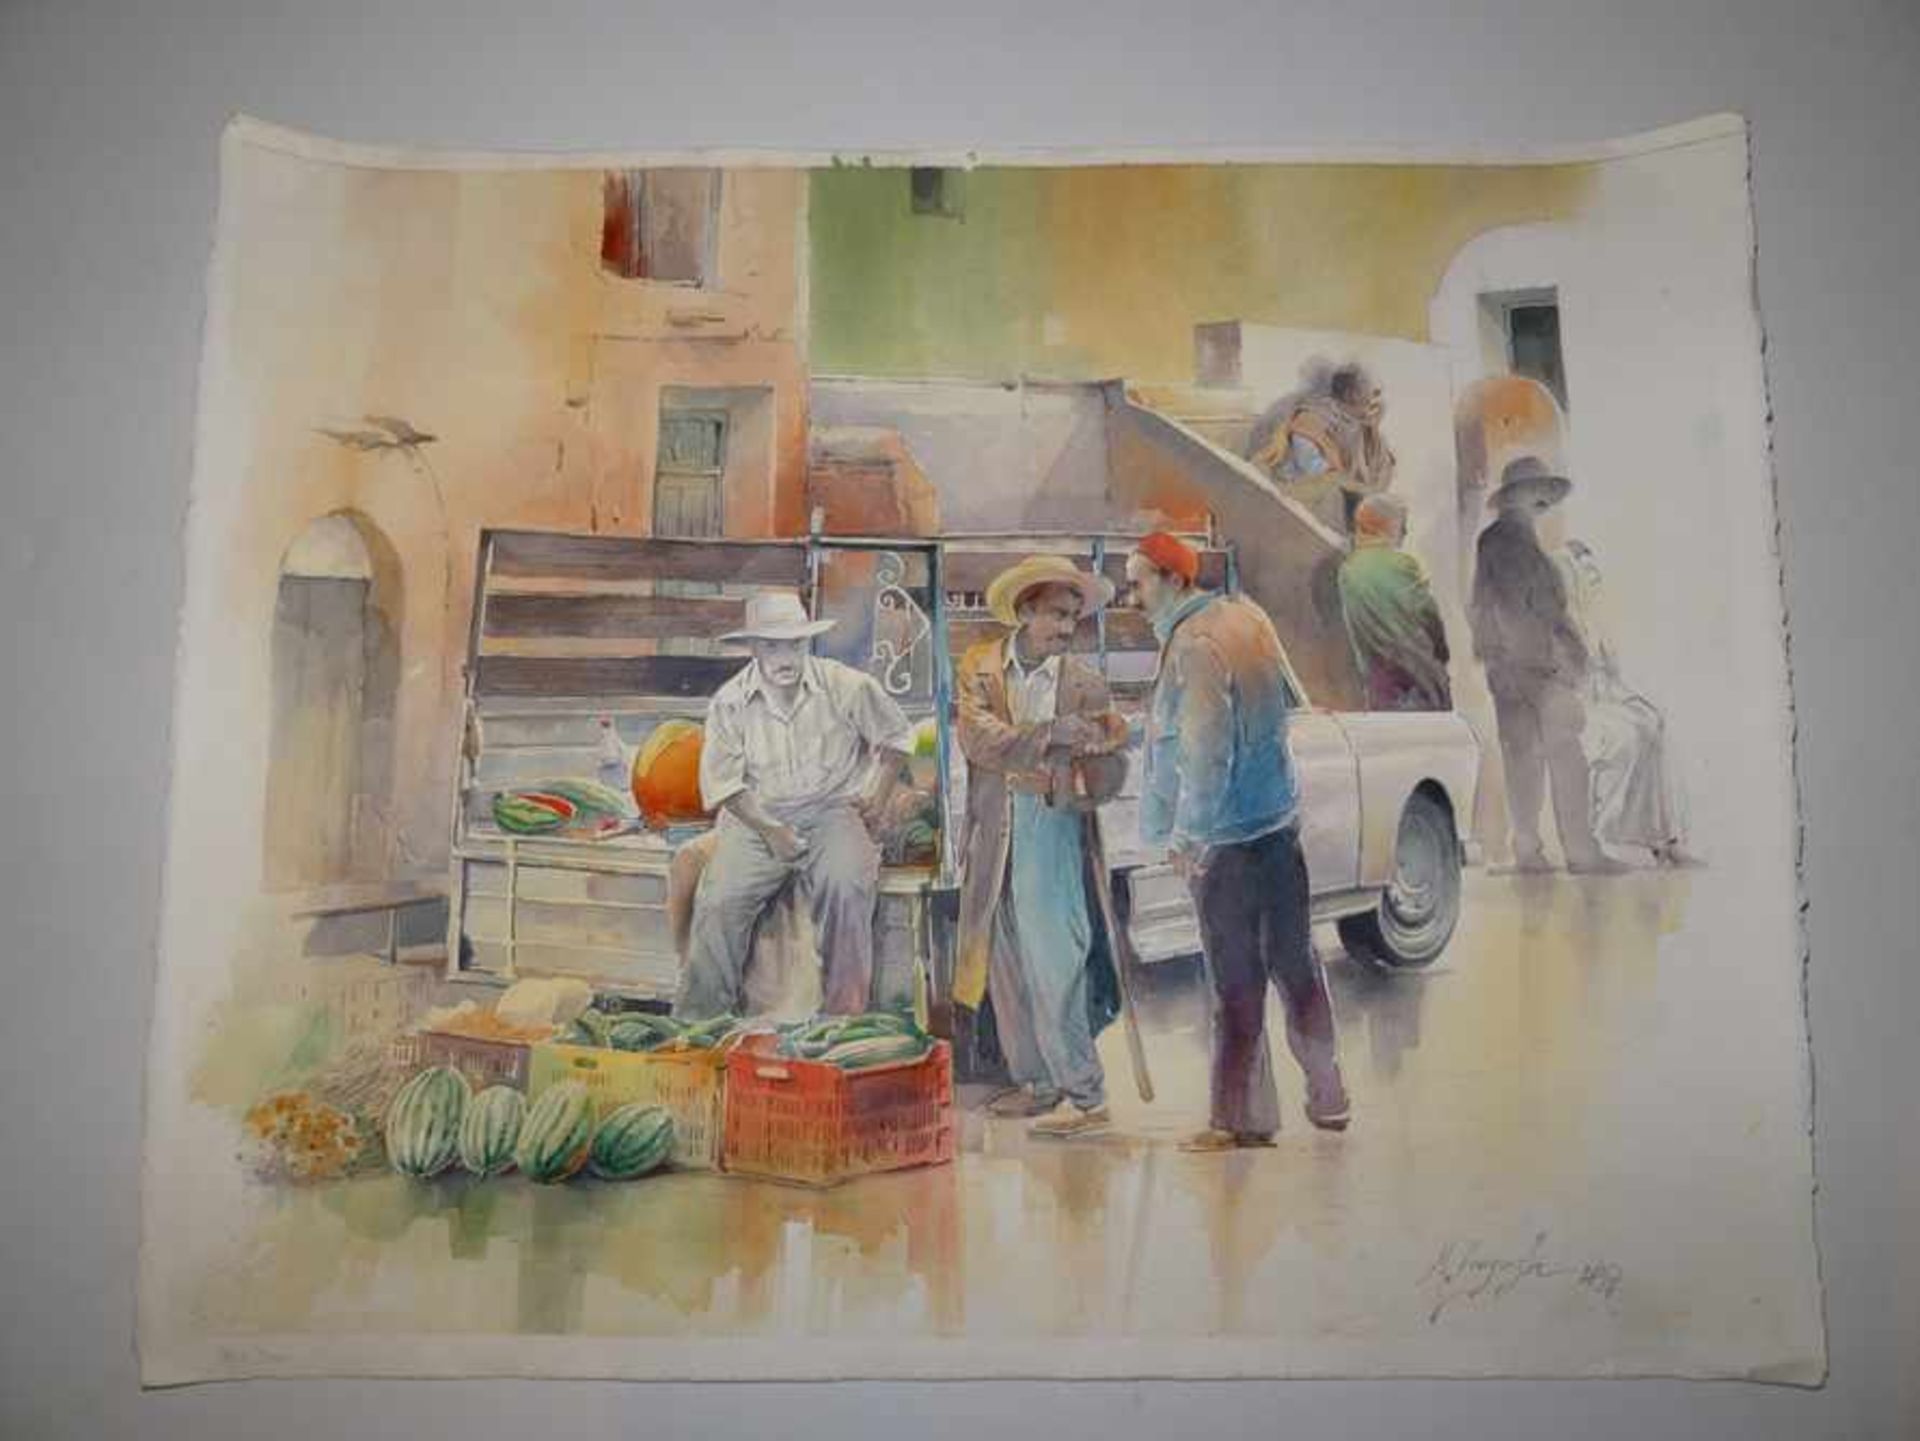 Tunesische Gemüseverkäufer mit Pick-Up. Mustapha Denguezli (Zeitgenosse, Tunesien). Aquarell auf